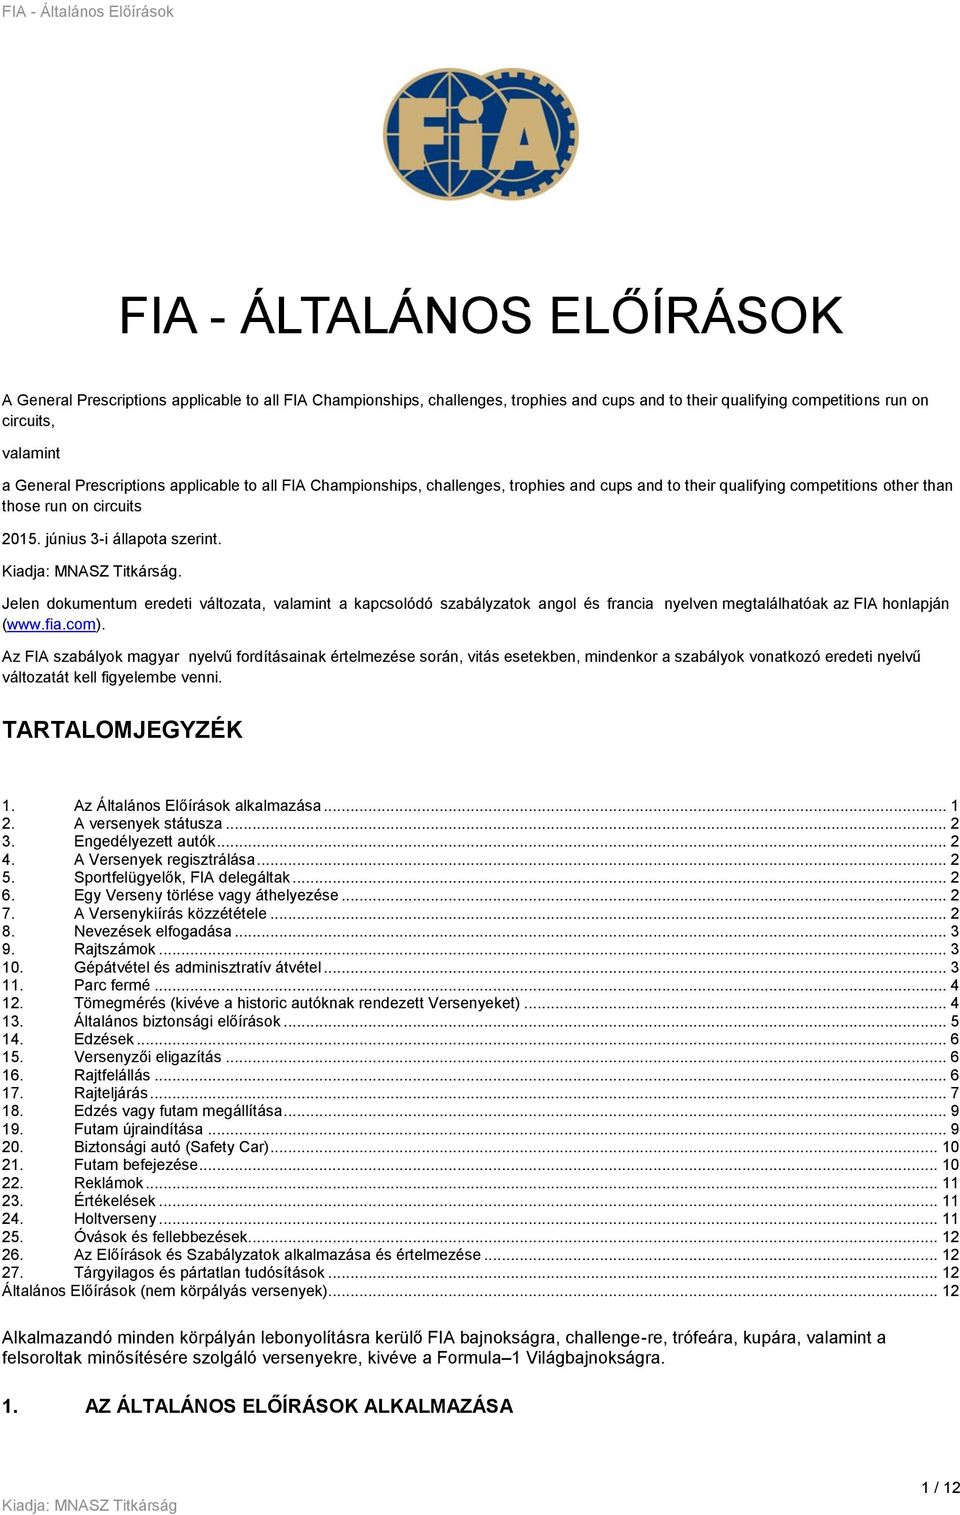 . Jelen dokumentum eredeti változata, valamint a kapcsolódó szabályzatok angol és francia nyelven megtalálhatóak az FIA honlapján (www.fia.com).